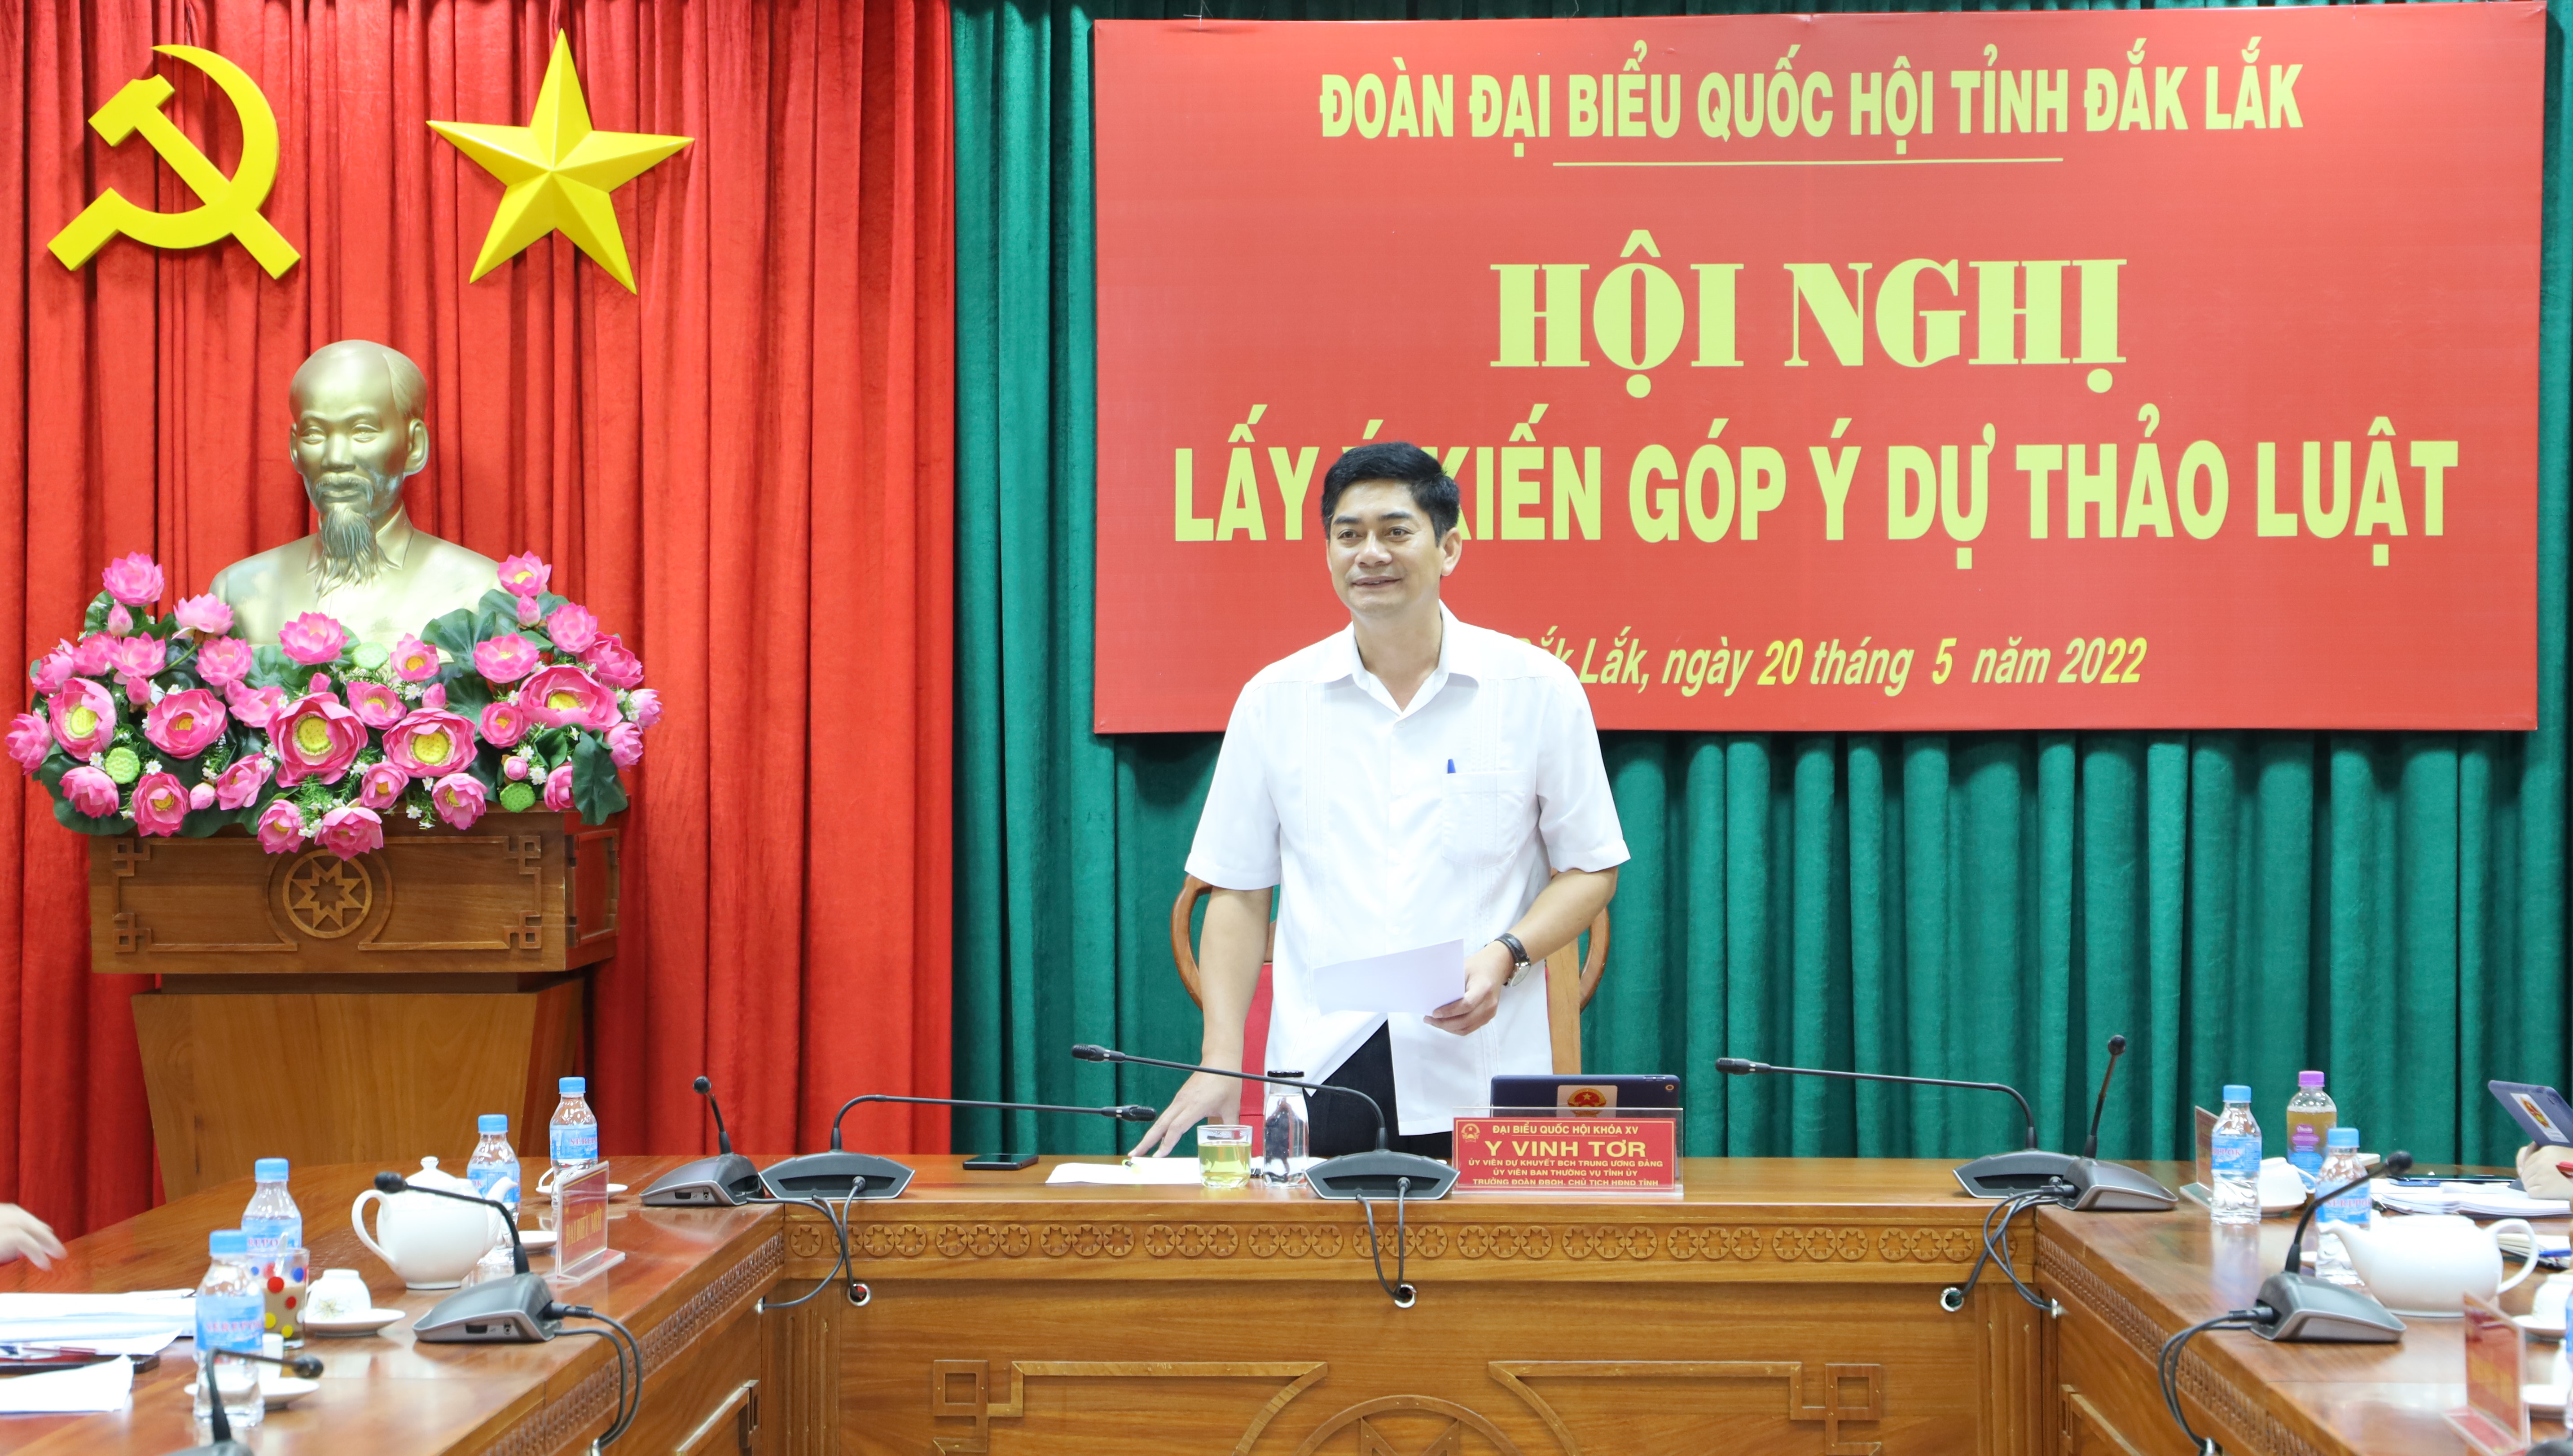 Đoàn Đại biểu Quốc hội tỉnh Đắk Lắk lấy ý kiến góp ý dự thảo Luật